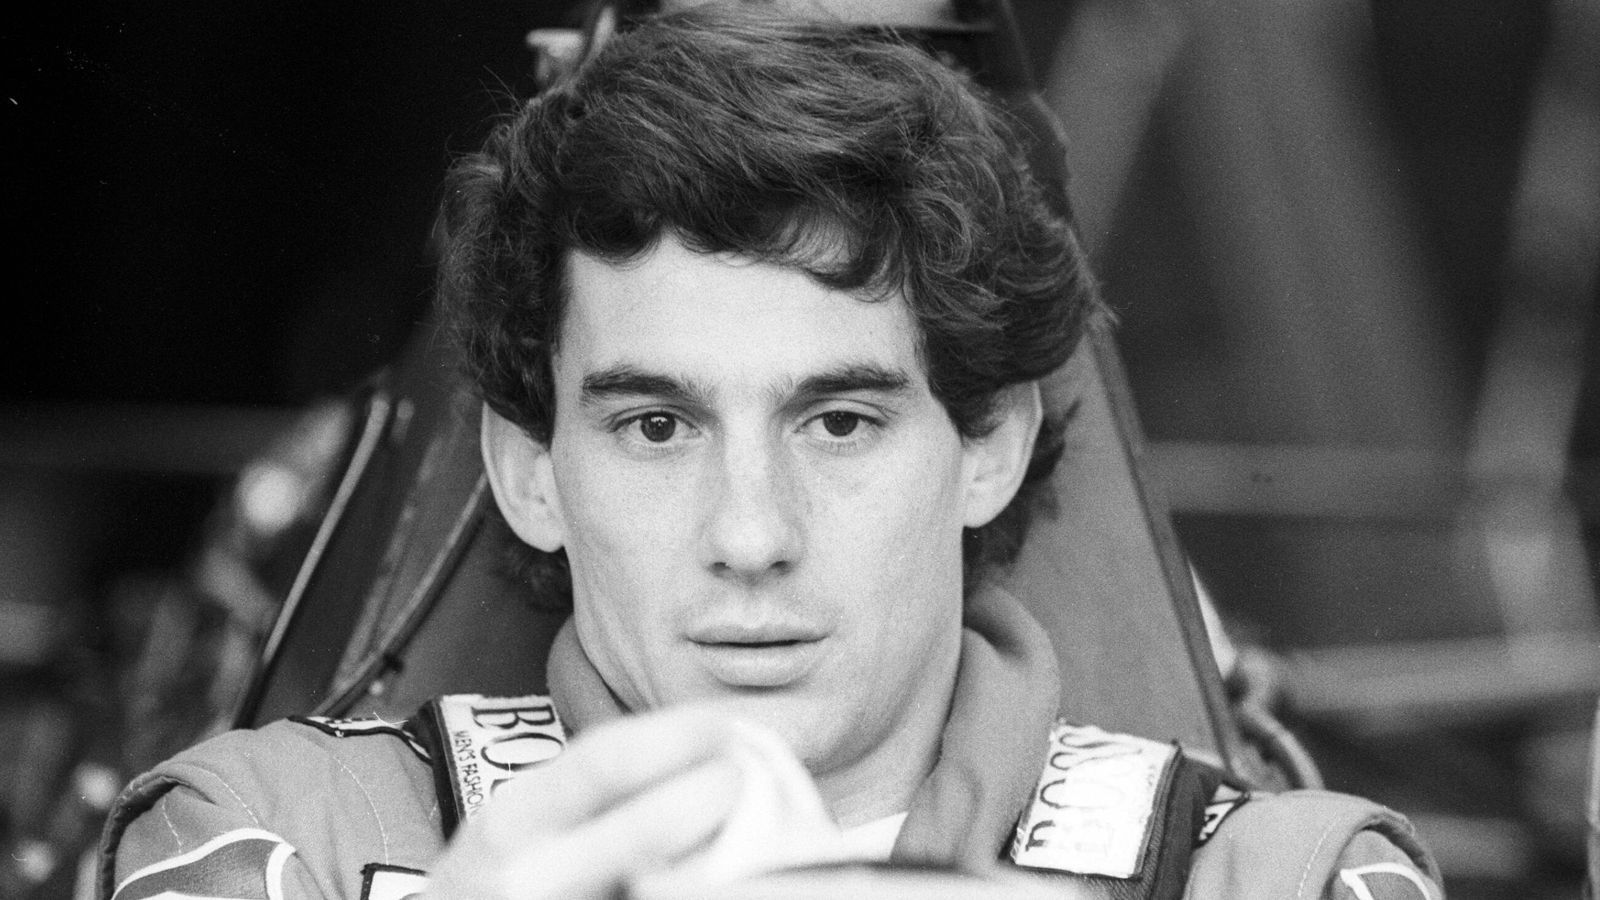 <strong>Ayrton Senna: Als die Formel 1 ihre Seele verlor</strong><br>
                Vor 30 Jahren, stirbt in Ayrton Senna eine Formel-1-Legende, ein Mythos. Am Todestag des Brasilianers wirft ran einen besonderen Blick auf einen besonderen Rennfahrer.